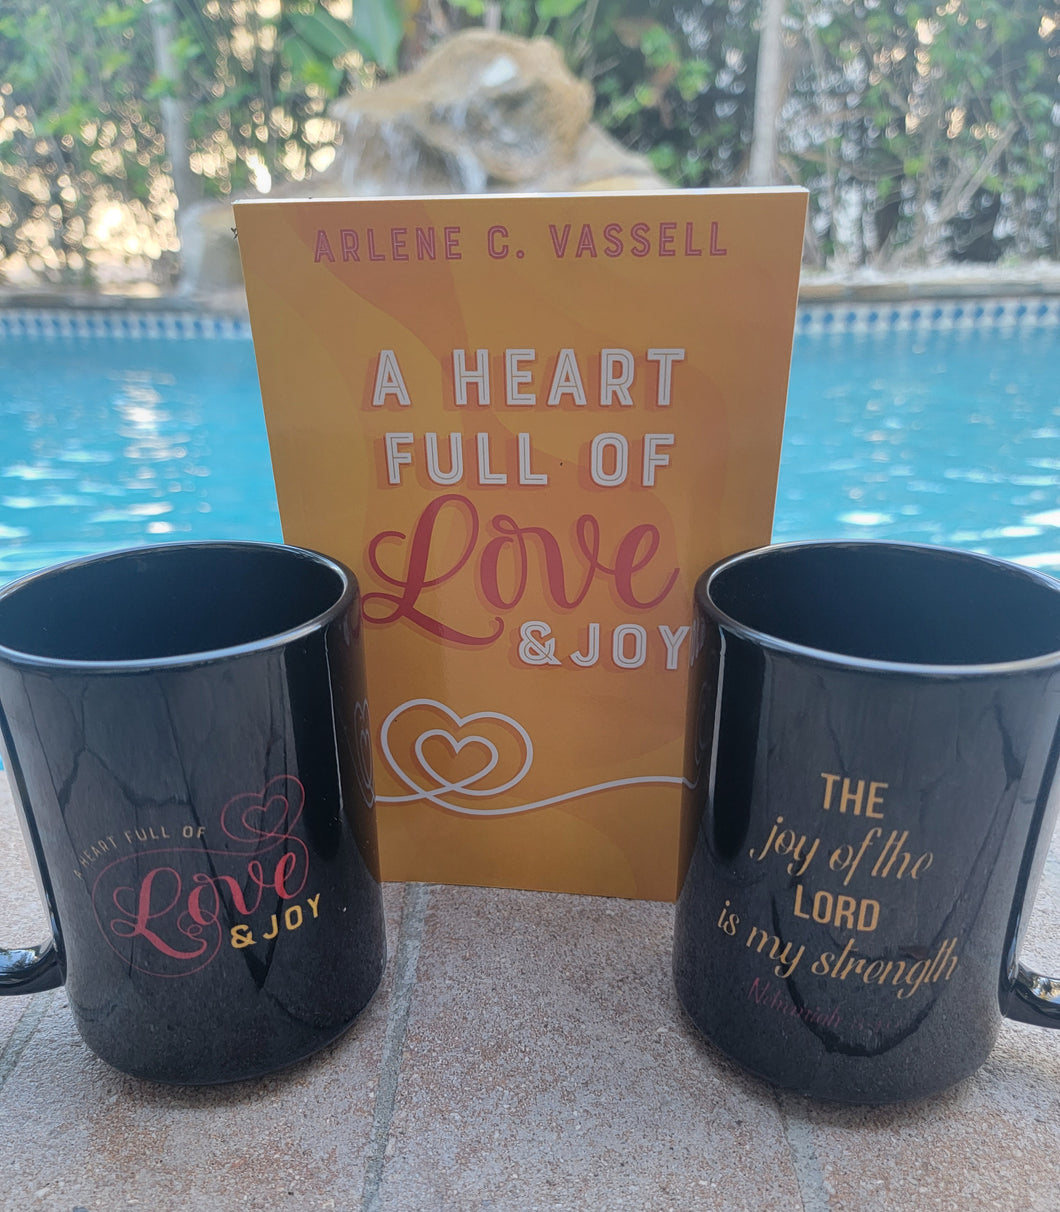 Celebrating LOVE: A Heart Full of Love & Joy